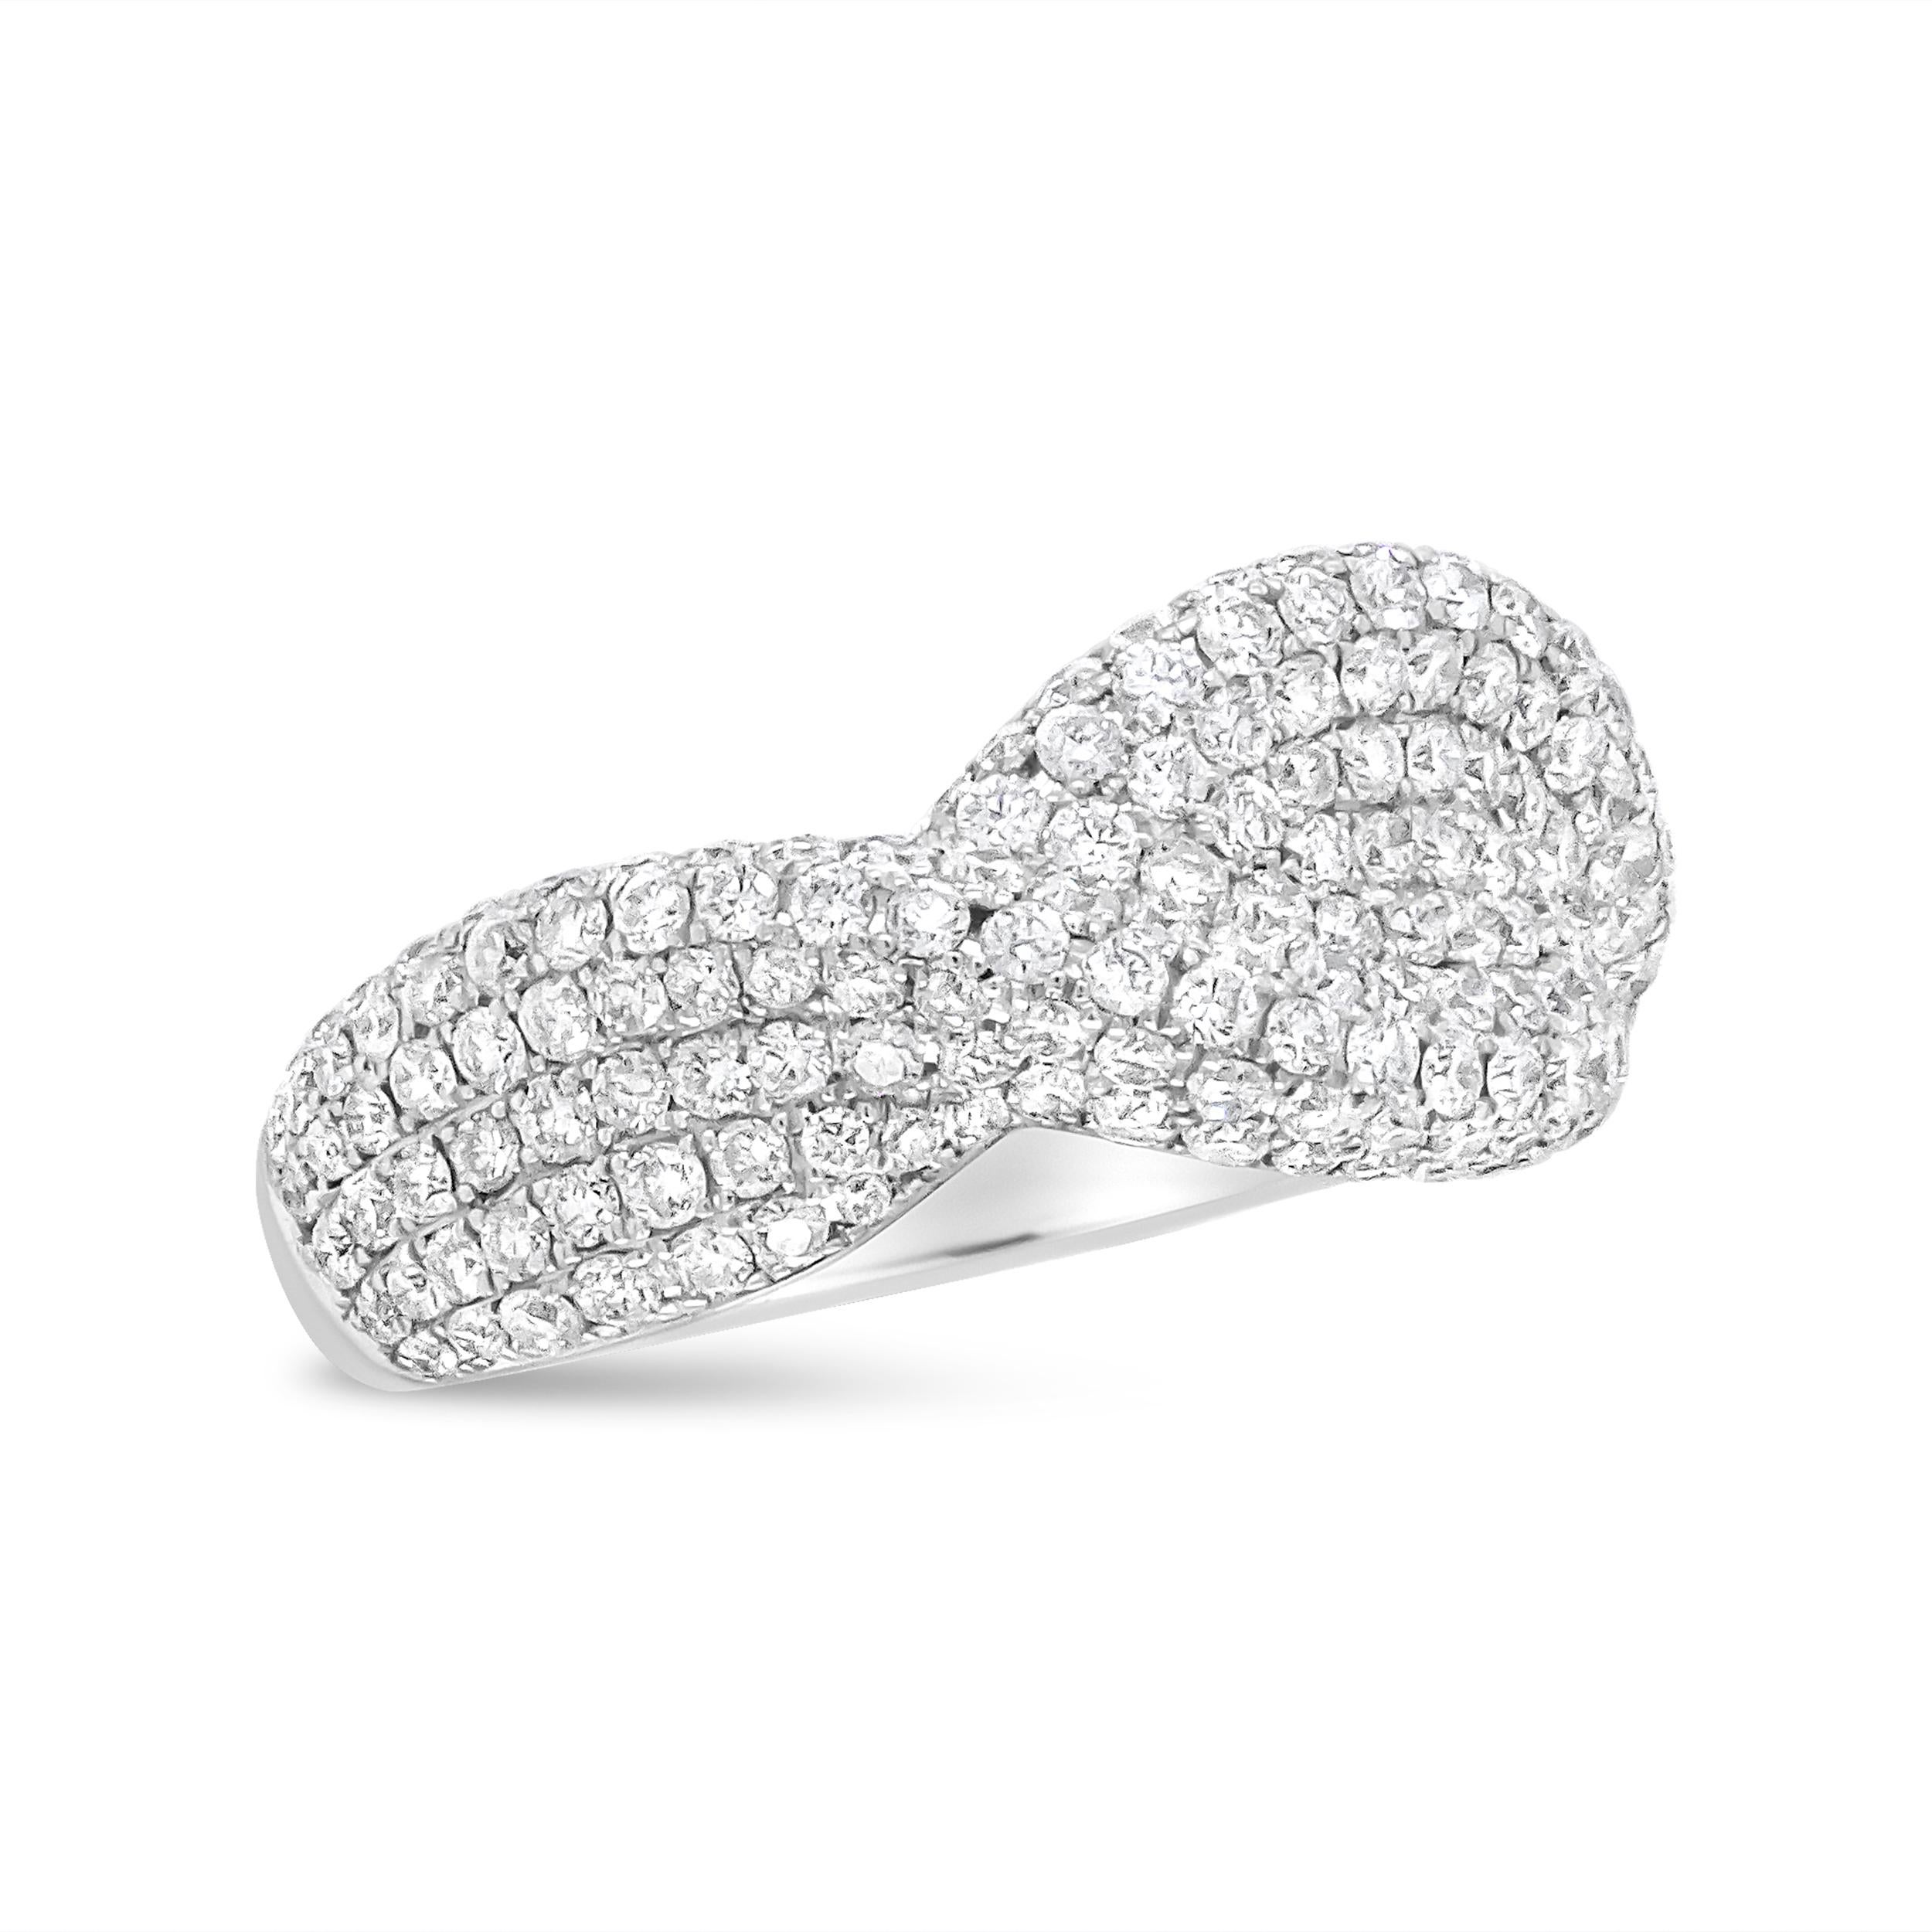 Conçu de manière complexe dans un motif rappelant une boucle infinie, cet anneau glamour en or blanc 18 carats est orné d'une grappe de diamants de 2 1/4 ctw. Des diamants blancs naturels de taille ronde traversent cette pièce dans d'élégants